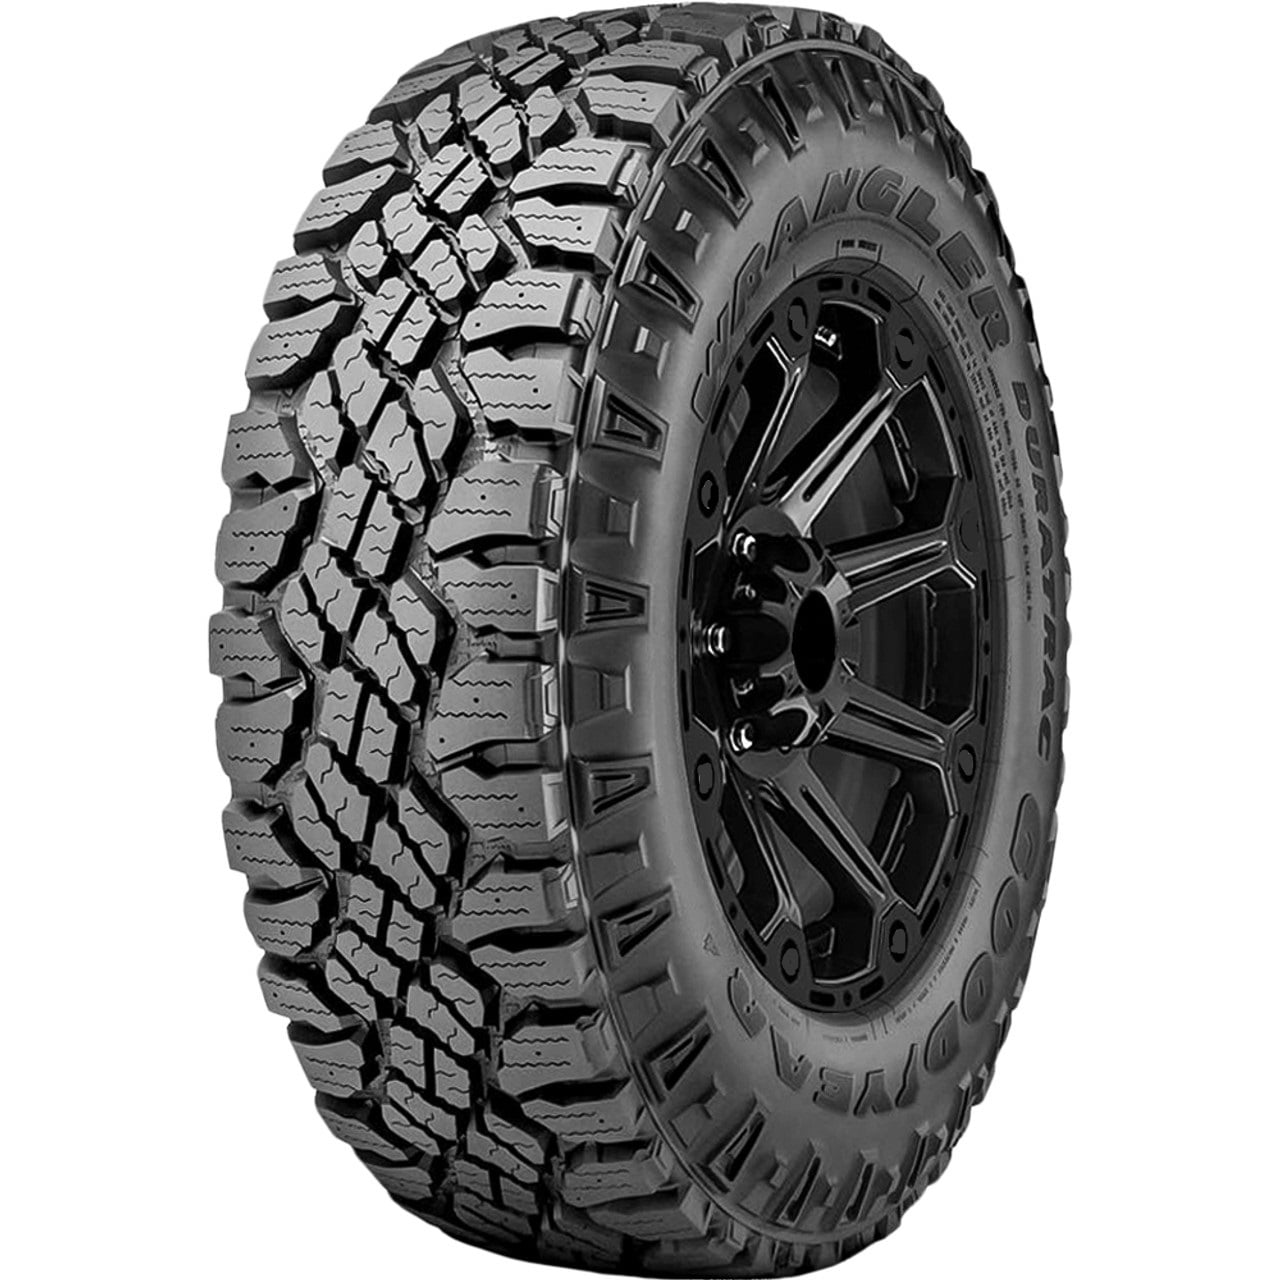 4 New Goodyear Wrangler DuraTrac All Terrain Tires - 265/65R17 112S -  